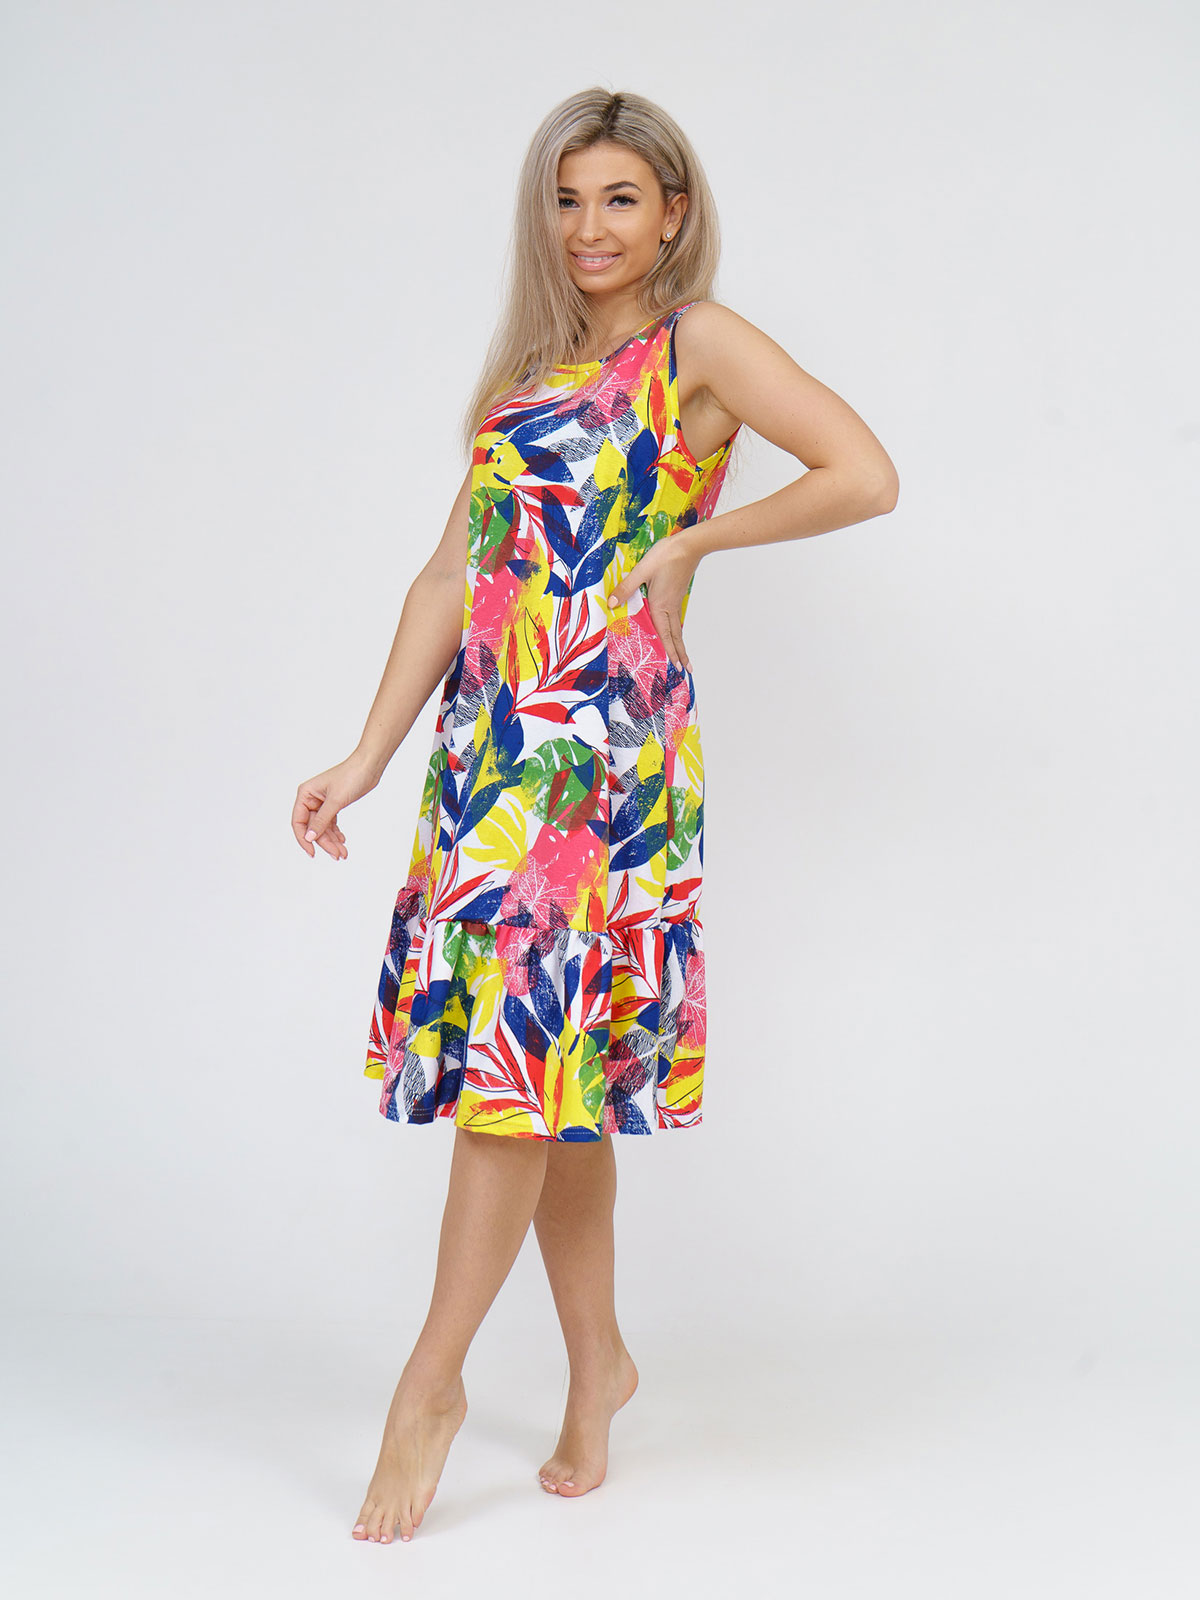 Платье женское НСД Трикотаж 16-0904 разноцветное 54 RU